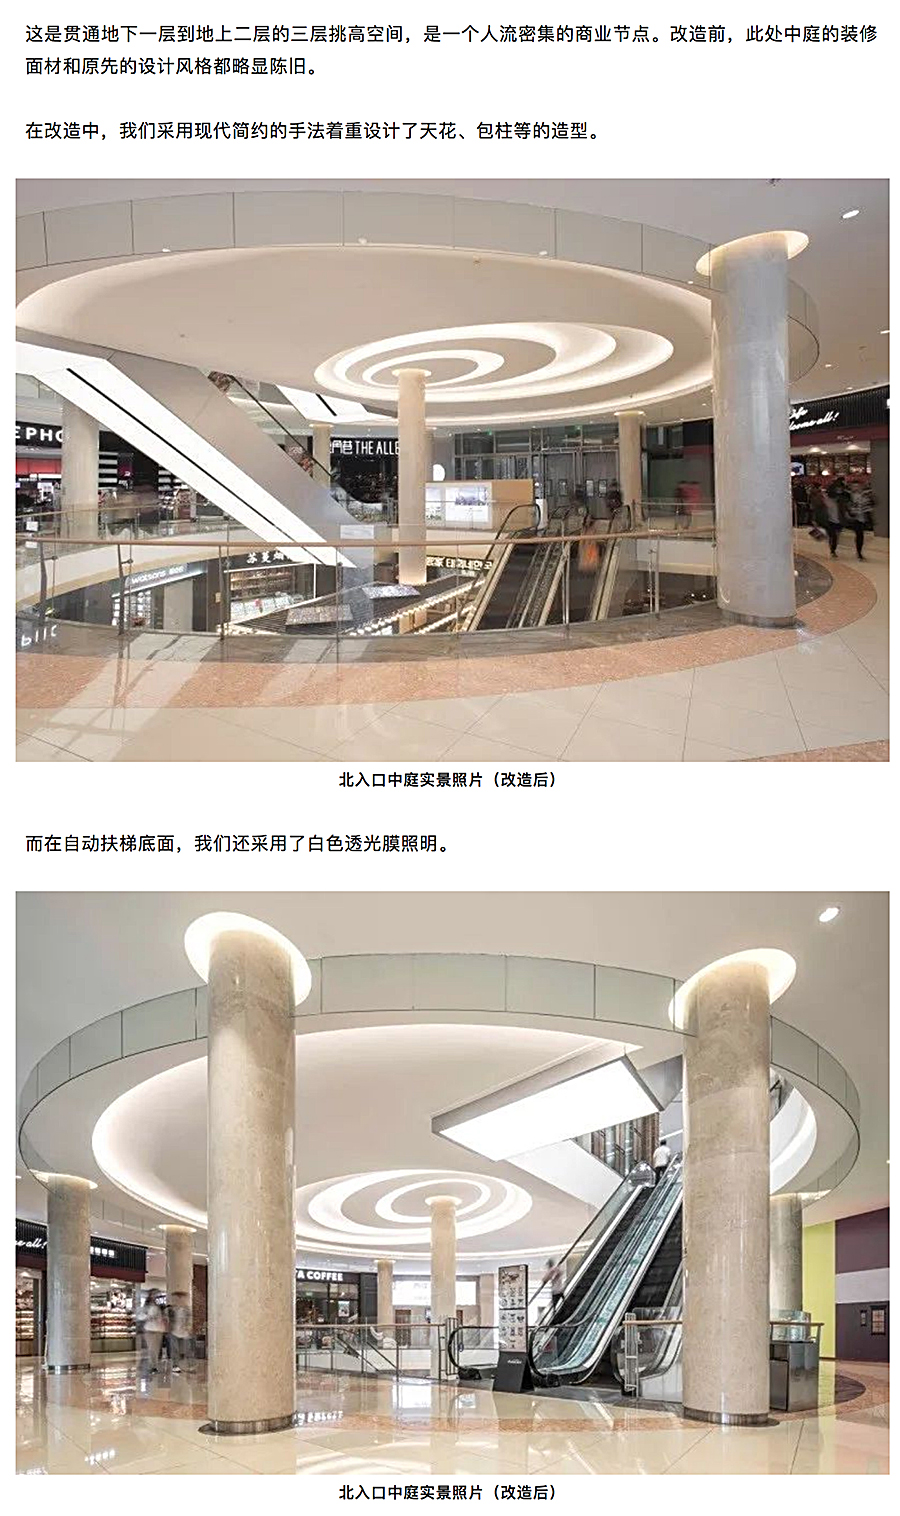 与时俱进的升级改造-_-南京龙江新城市广场一期商业改造_0007_图层-8.jpg